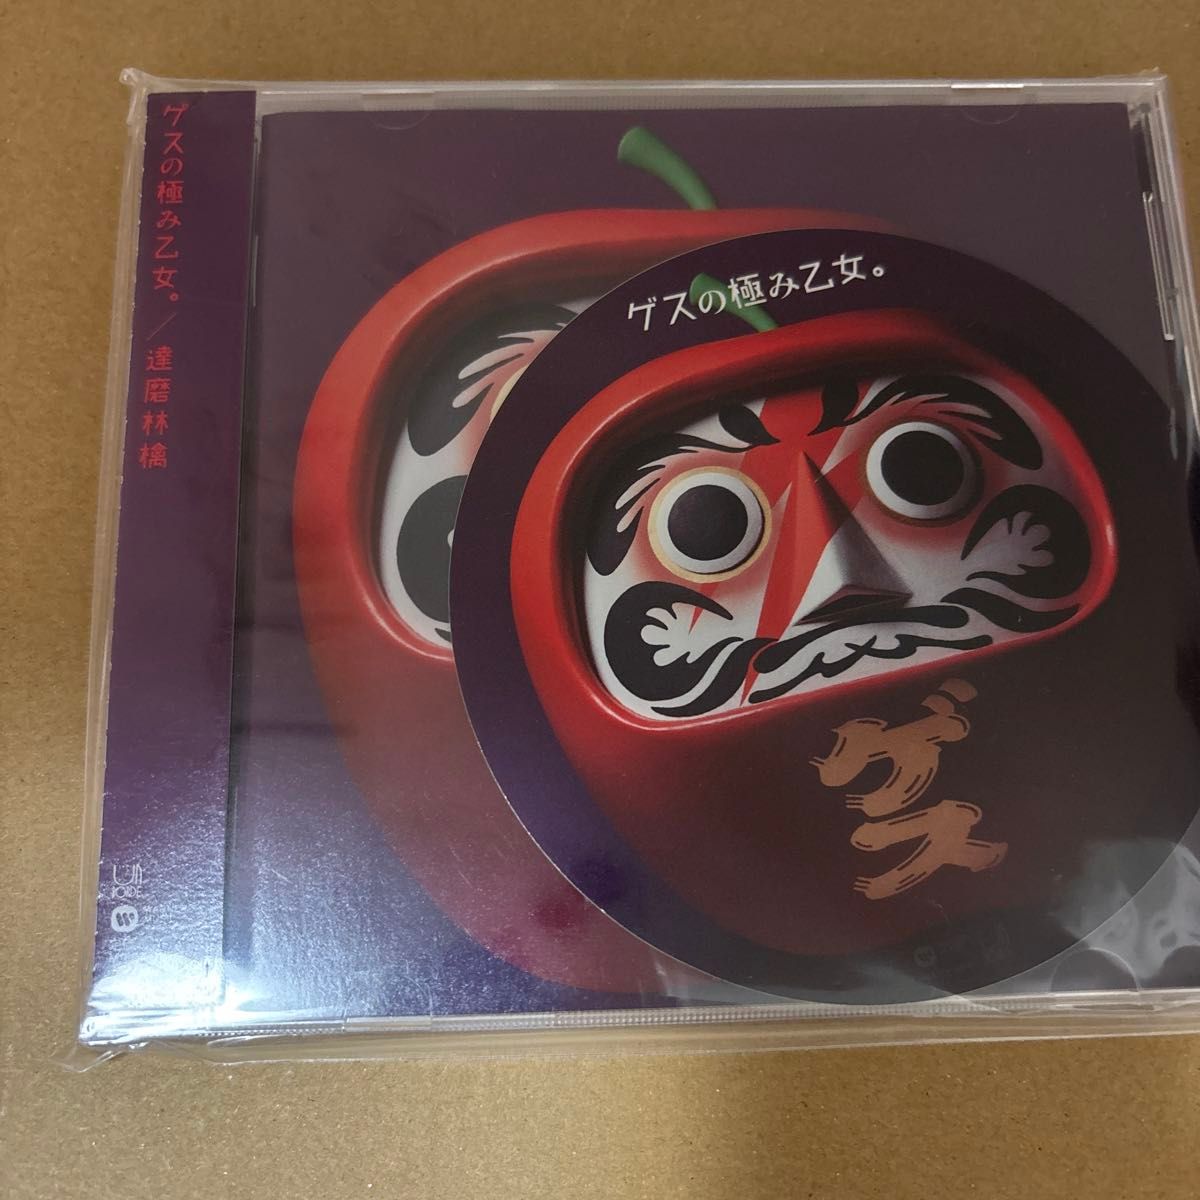 [74] CD ゲスの極み乙女 達磨林檎 WPCL-12443